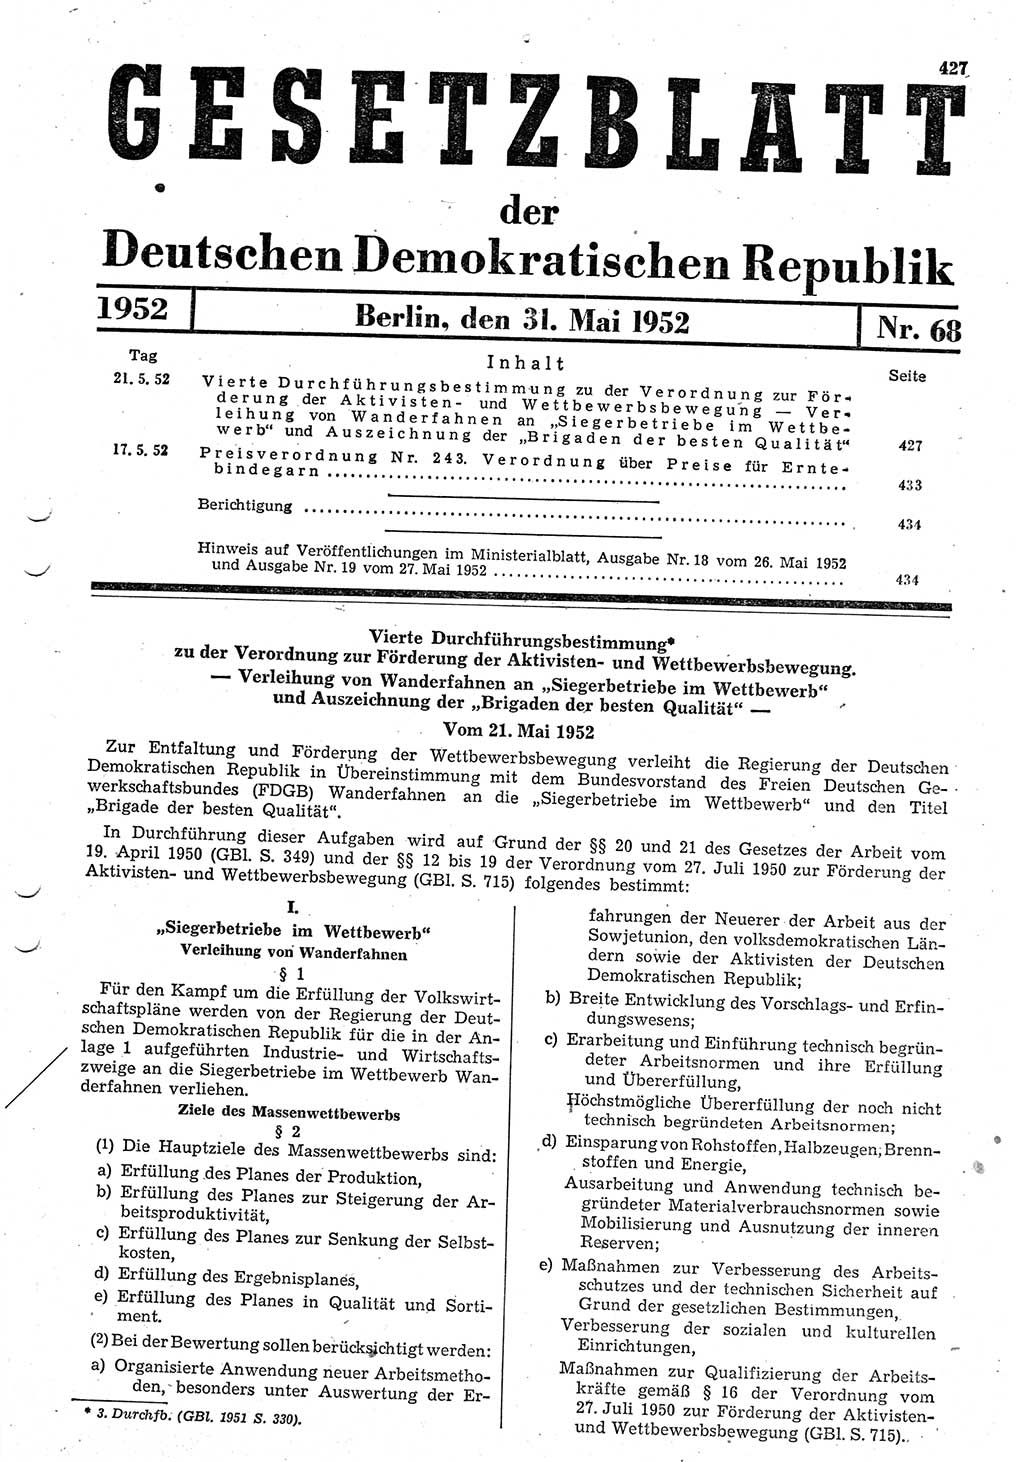 Gesetzblatt (GBl.) der Deutschen Demokratischen Republik (DDR) 1952, Seite 427 (GBl. DDR 1952, S. 427)